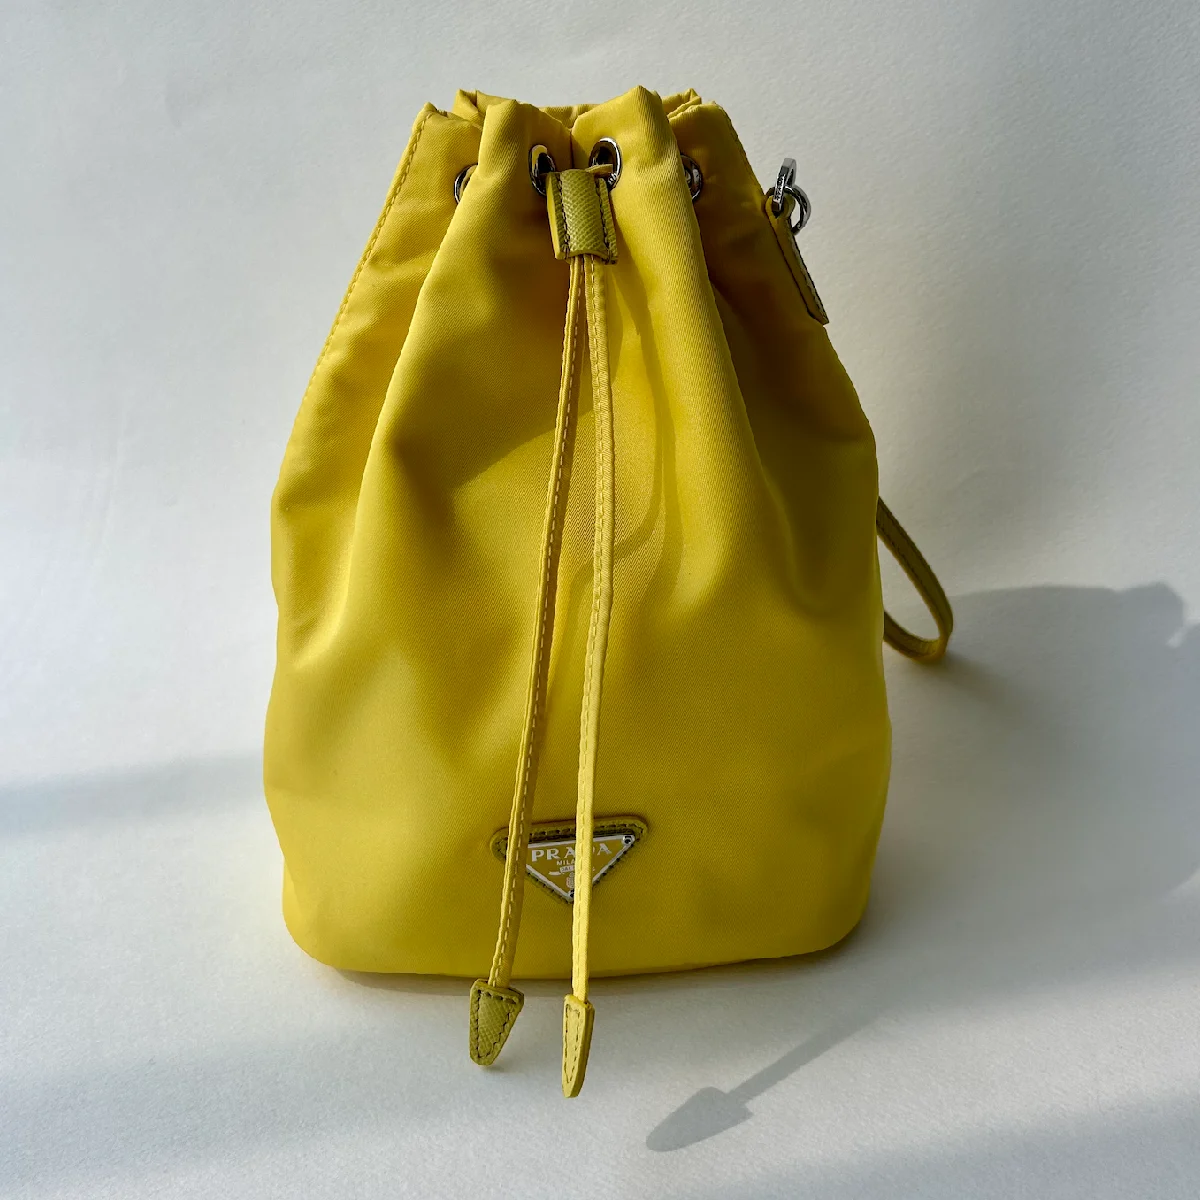 幸せの黄色いバッグは【プラダ】でした